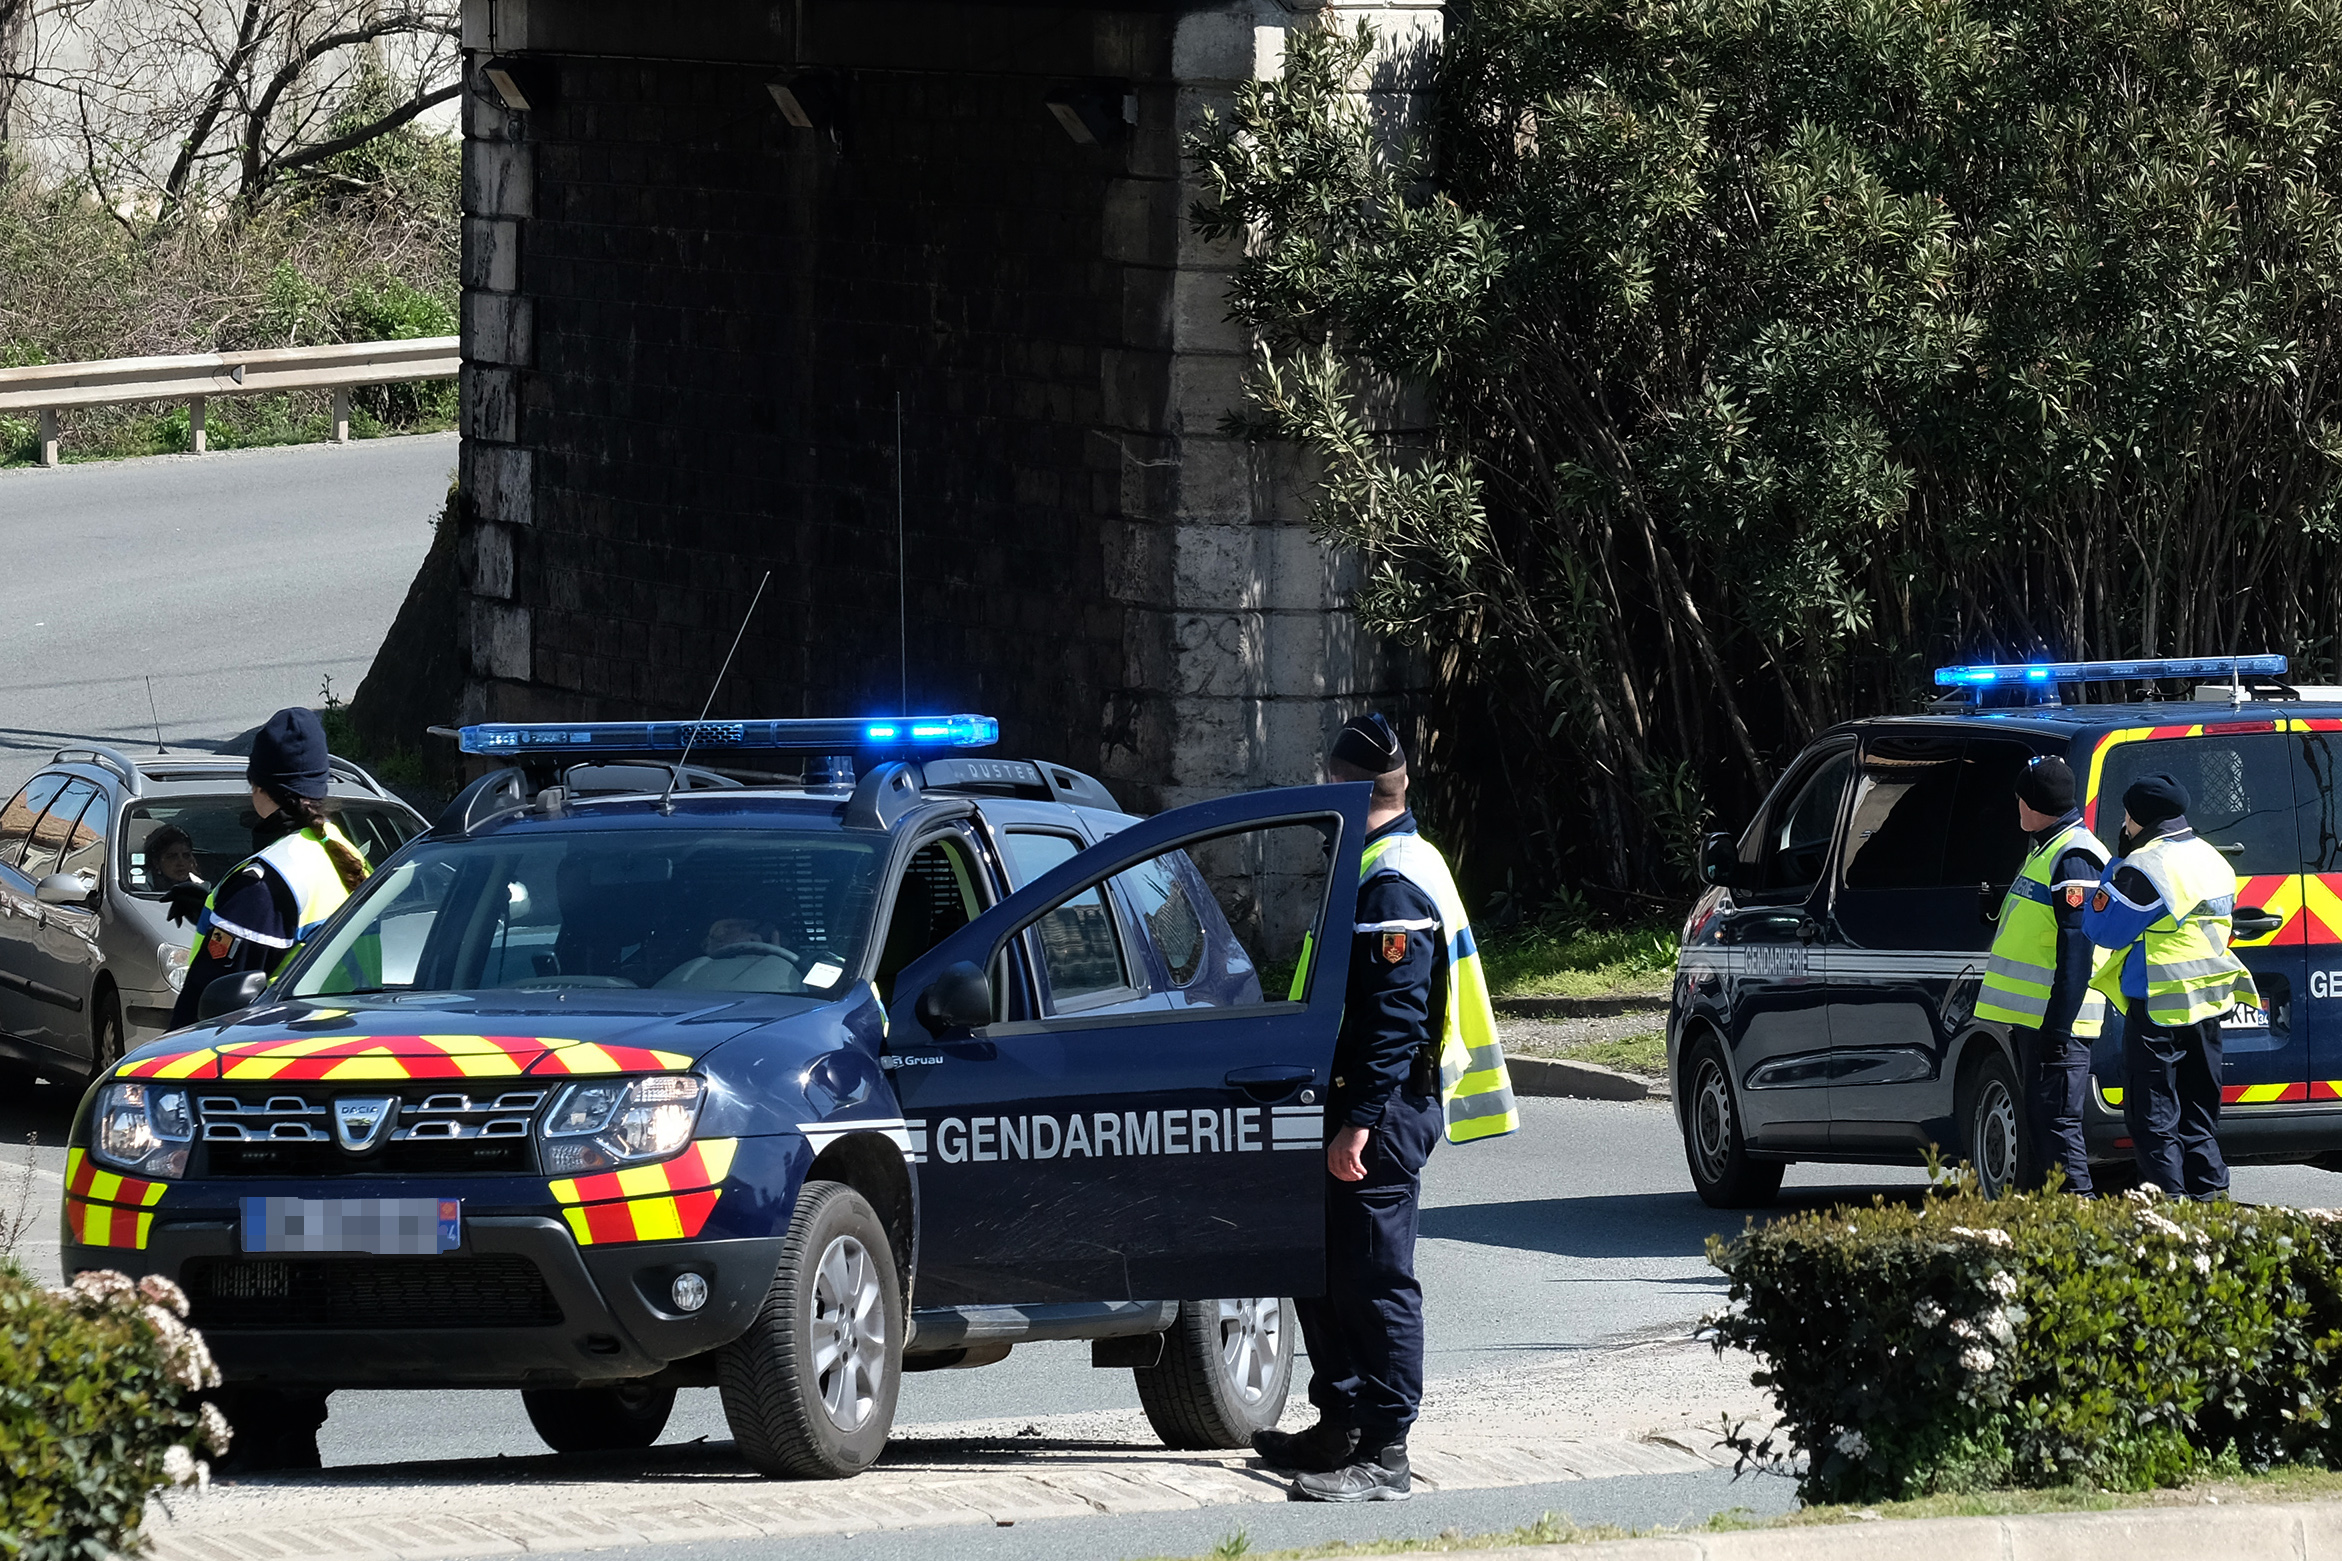 Γαλλία πυροβολισμοί: Υπάλληλος εταιρίας εισέβαλε σε συνάντηση και άνοιξε πυρ